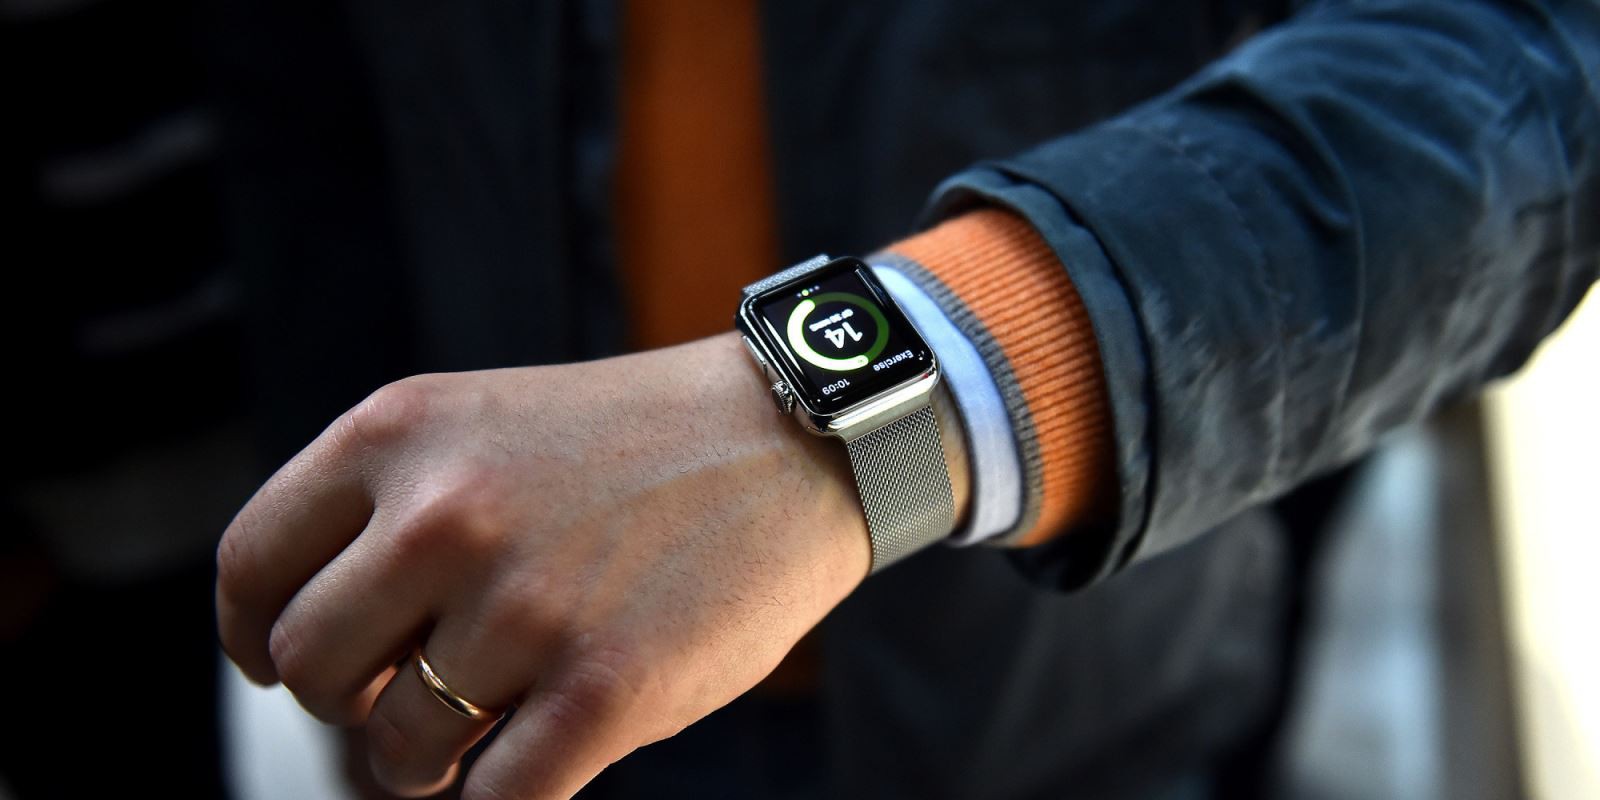 Tổng hợp những thông tin mới nhất về Apple Watch 3 